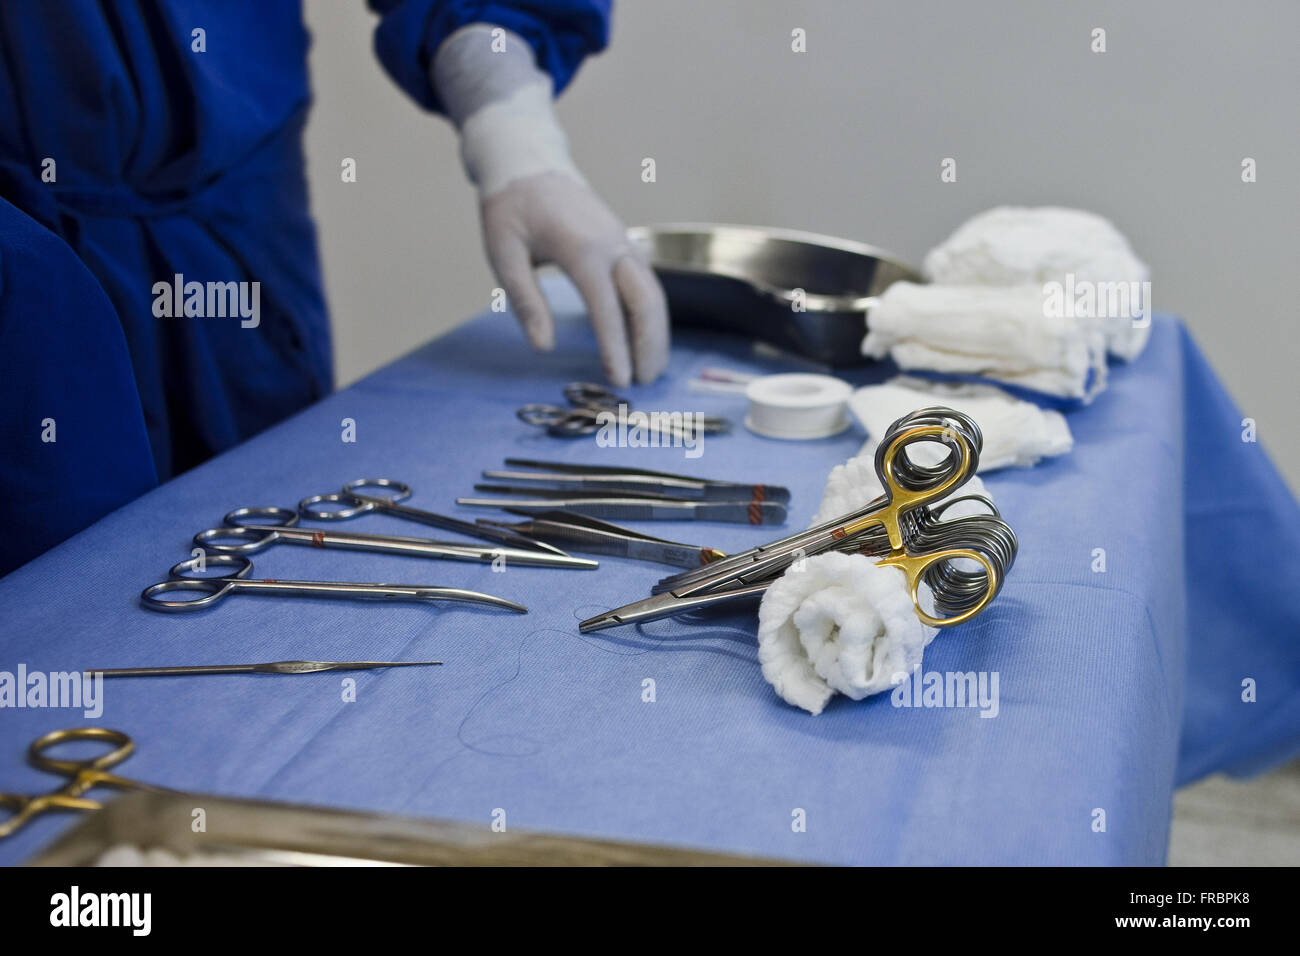 Gants de chirurgie en milieu hospitalier : tout savoir